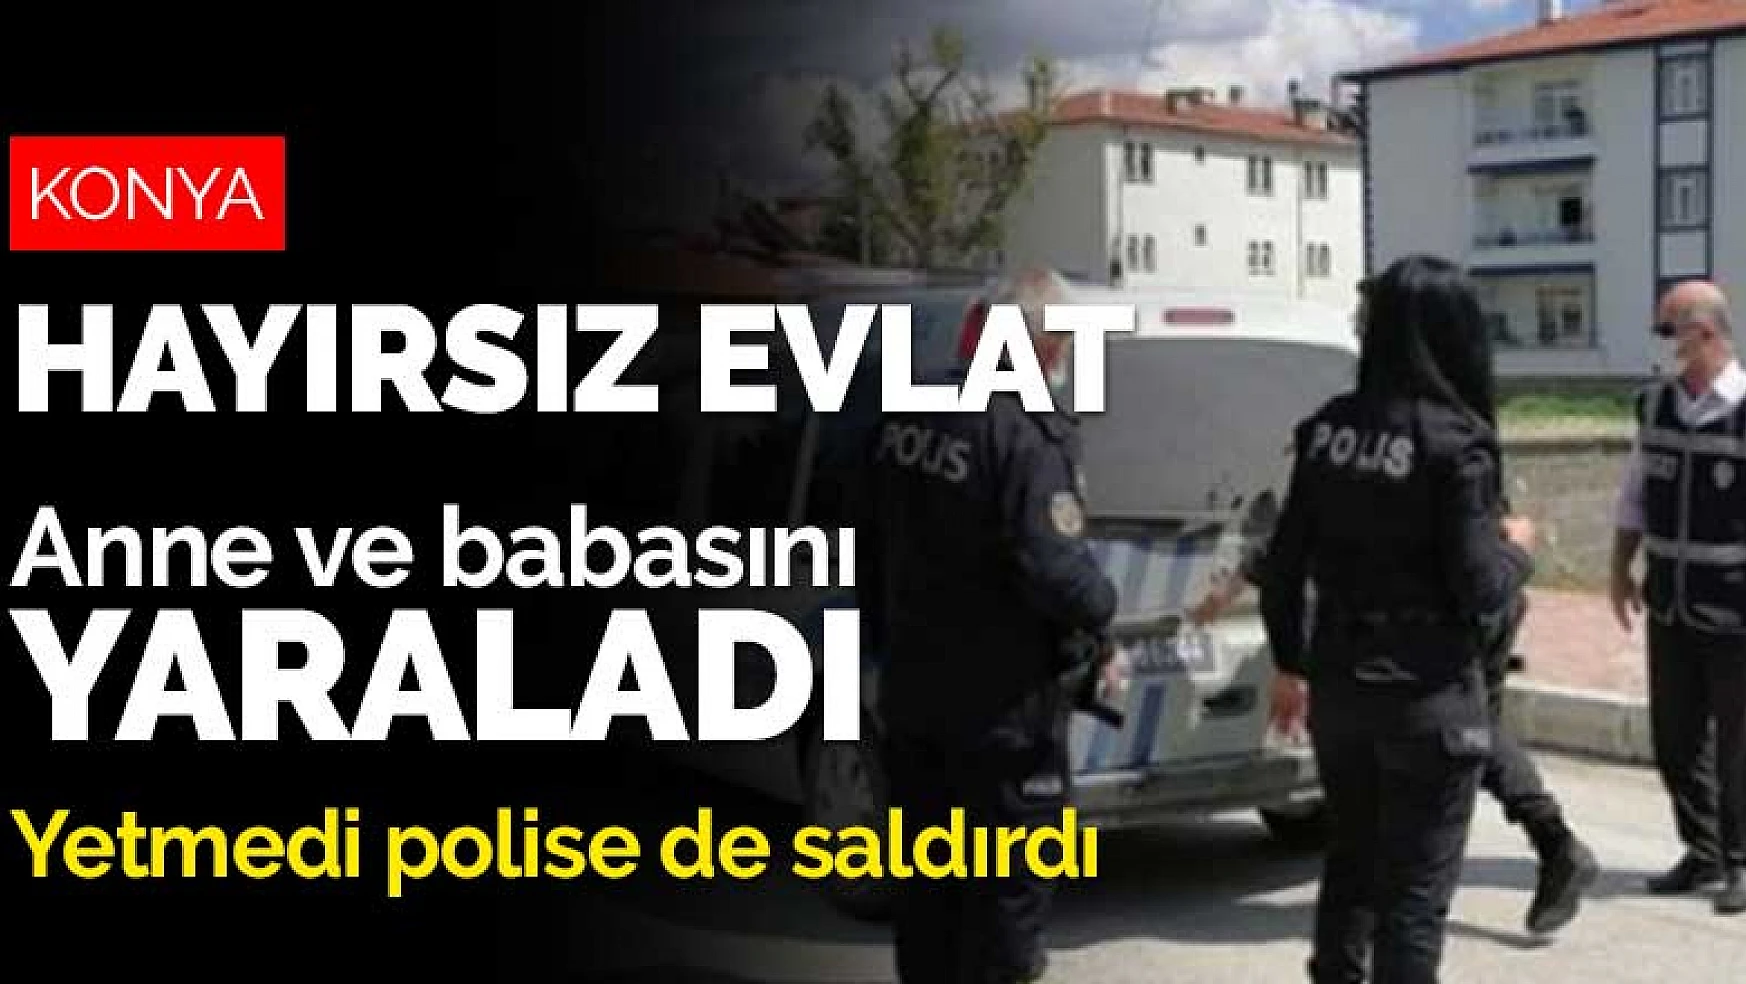 Konya Ereğli'de anne ve babasını yaralayan zanlı polise de saldırdı